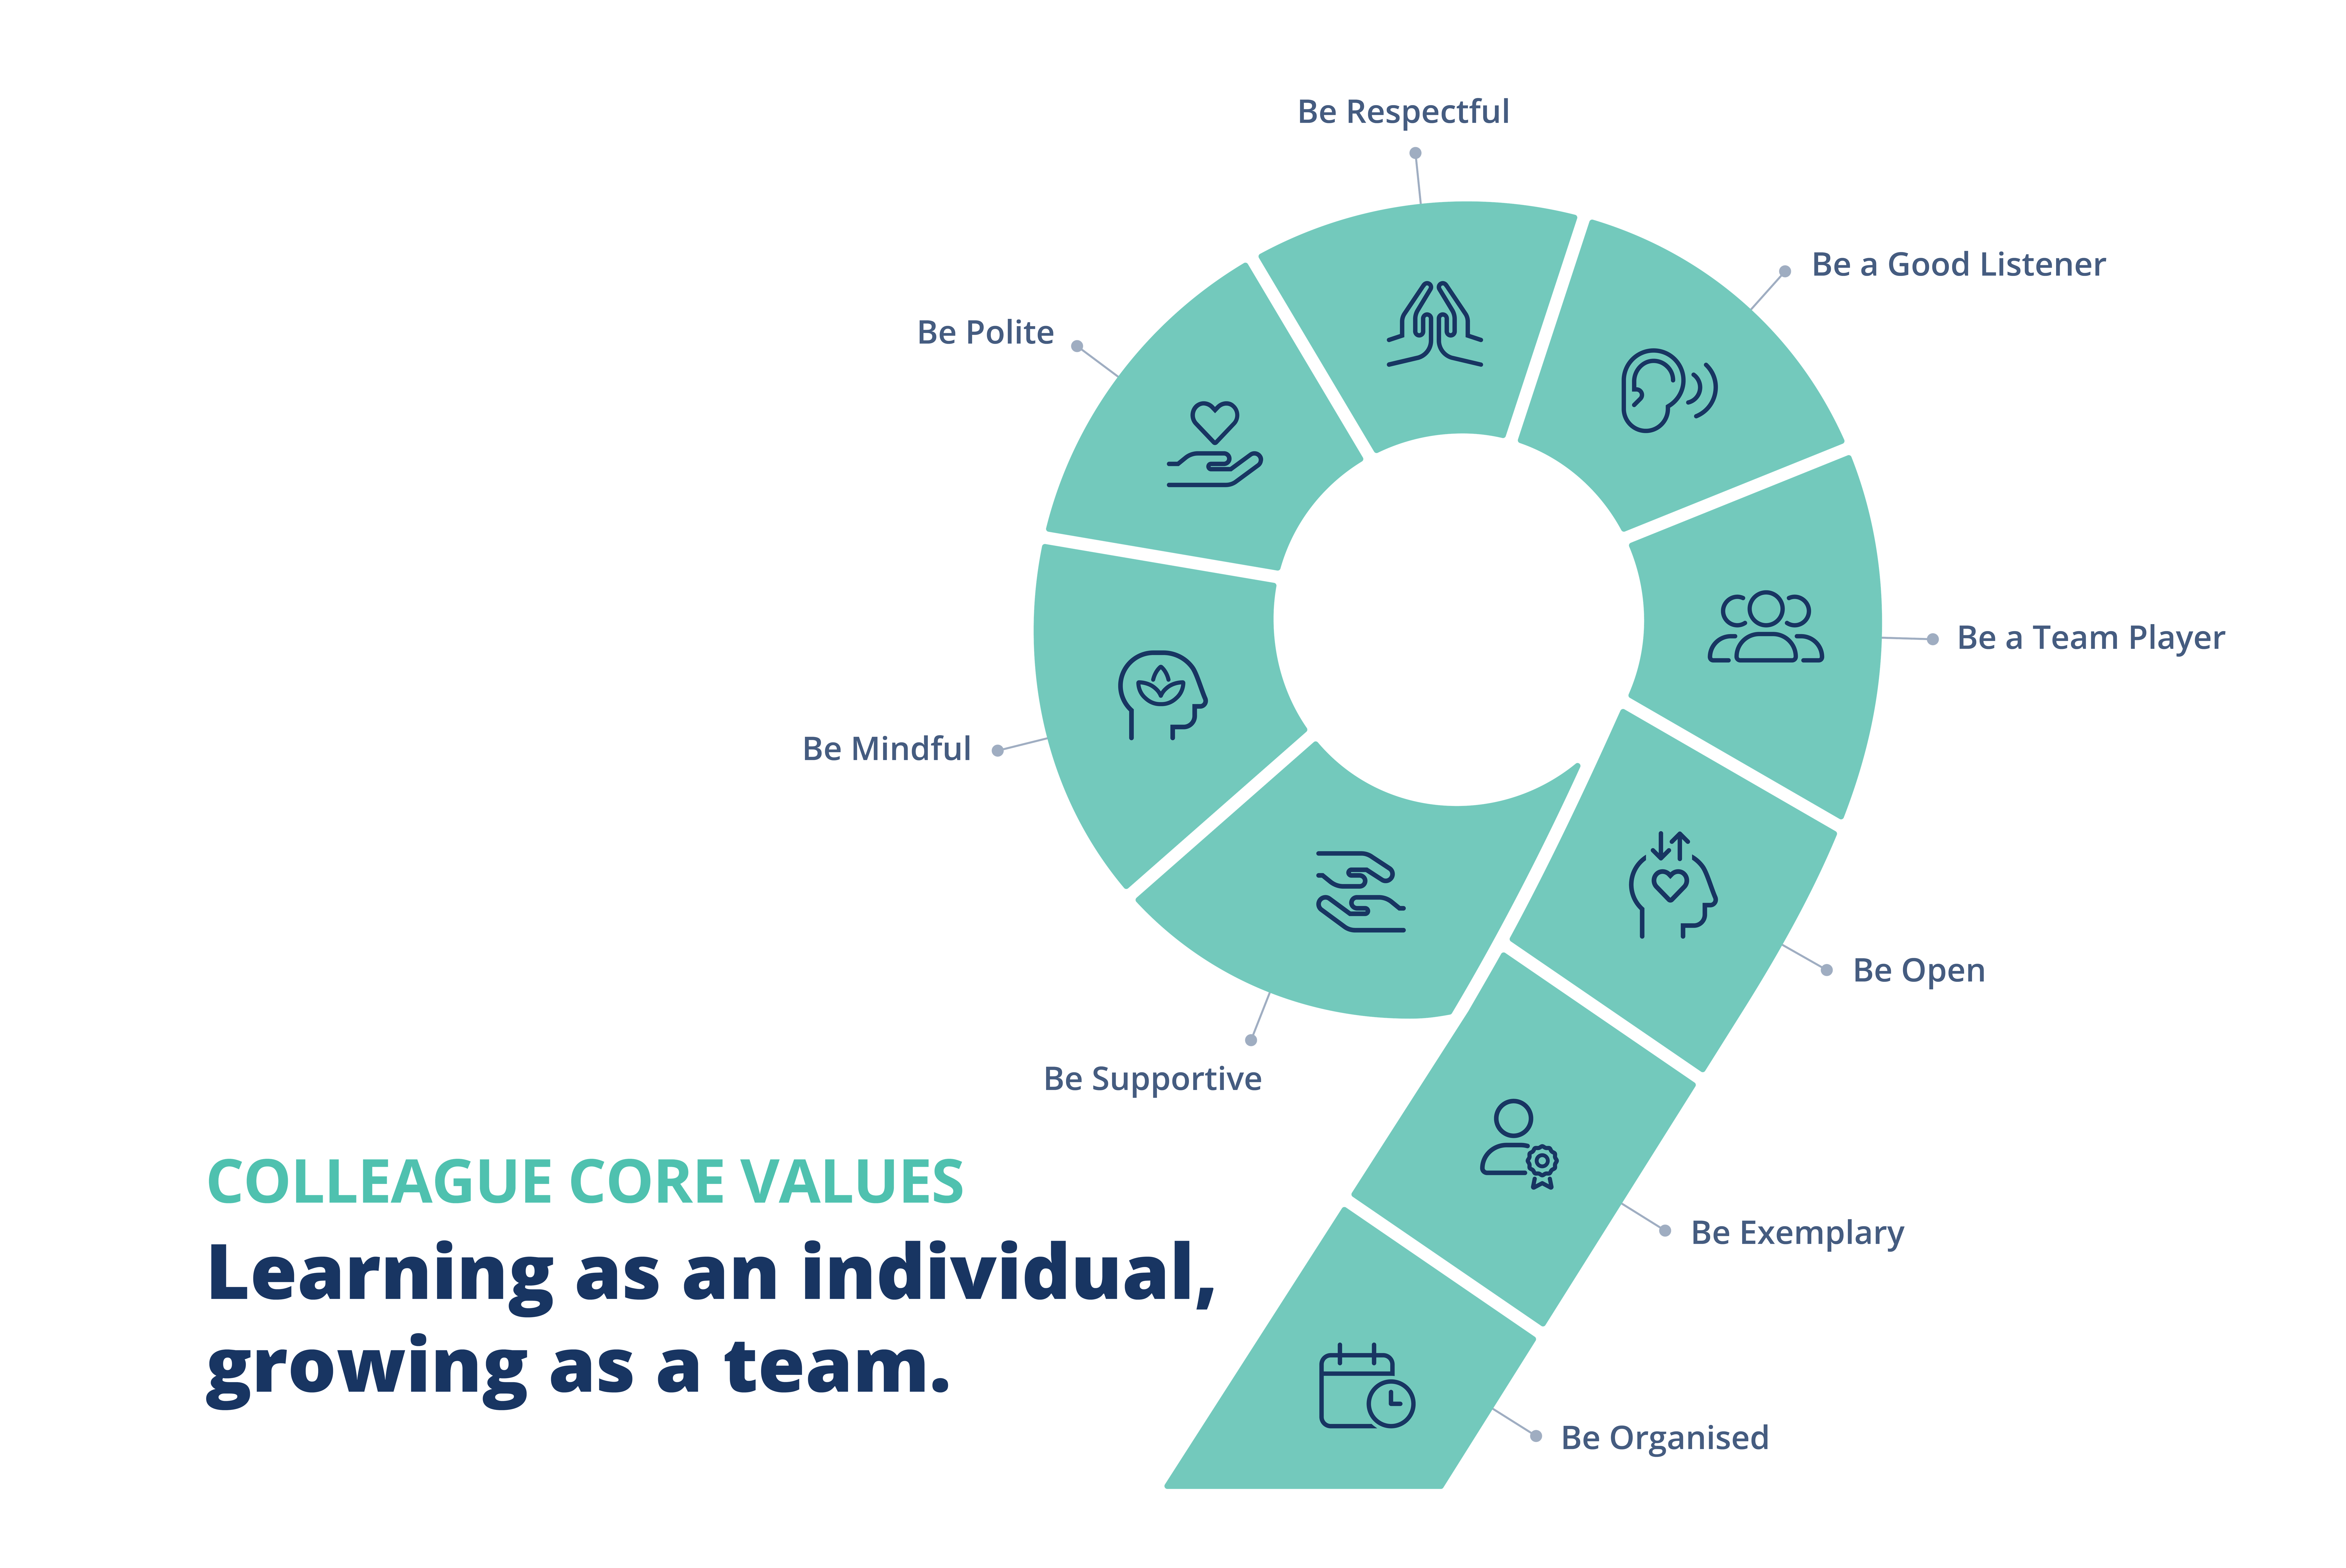 Colleague Core Values